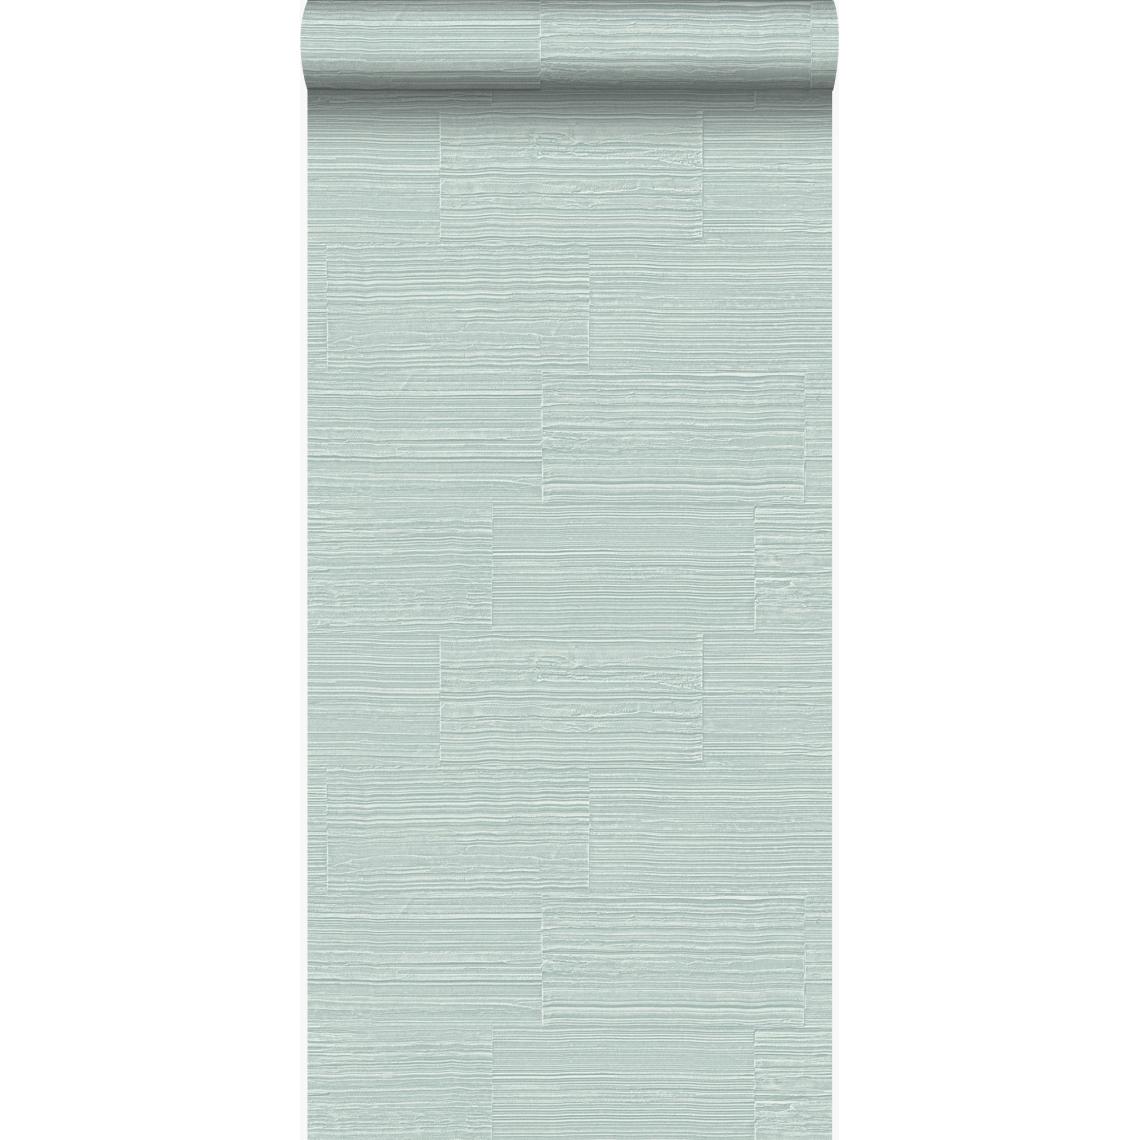 Origin - Origin papier peint pierre naturelle brute rétro en appareil de panneresses vert menthe clair - 347577 - 53 cm x 10.05 m - Papier peint